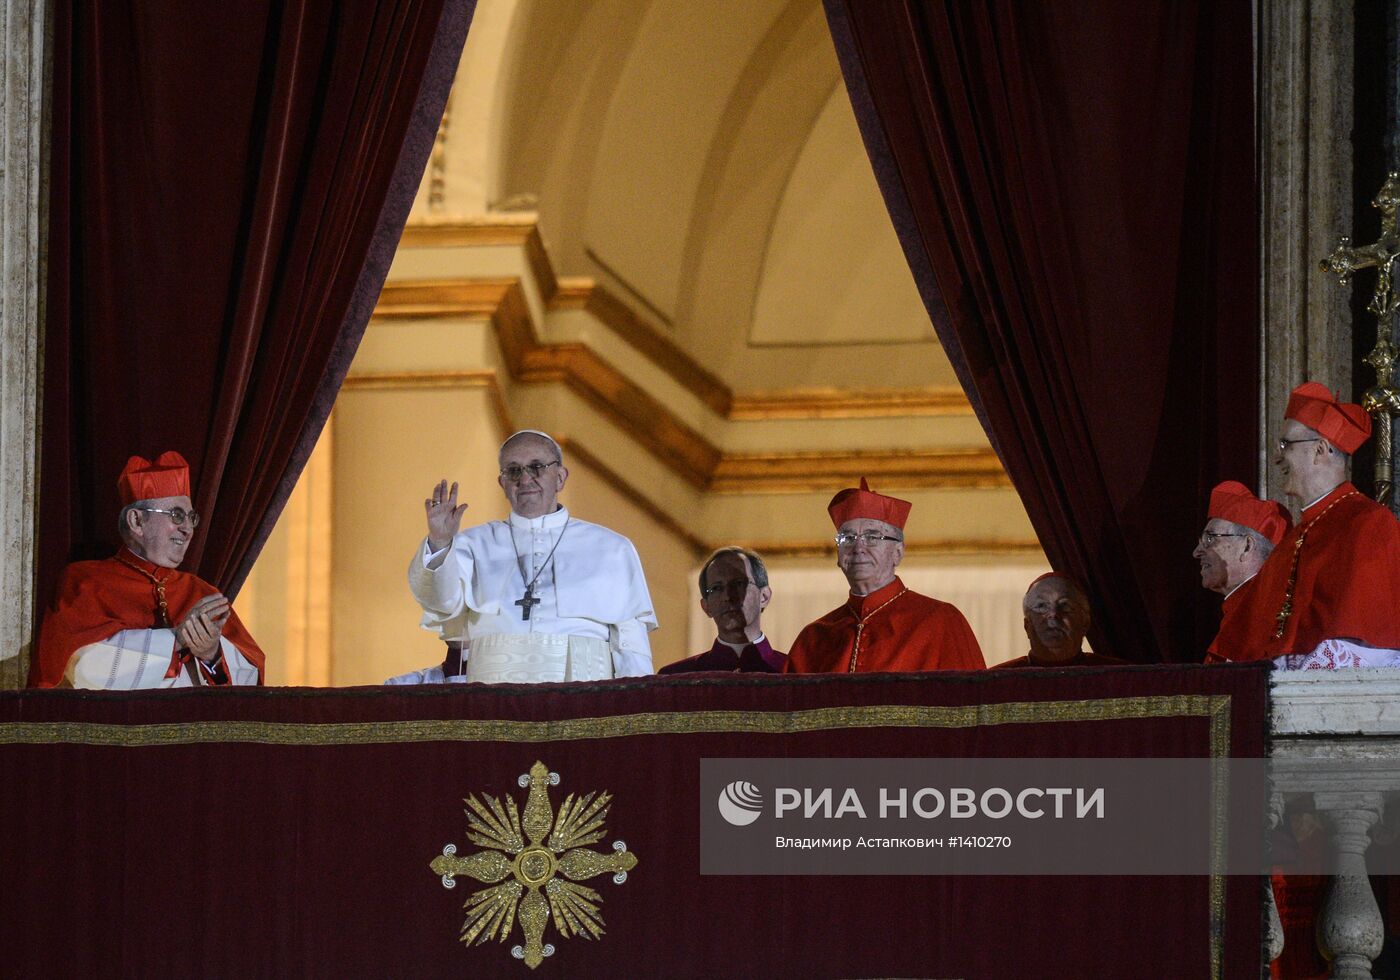 Аргентинский кардинал стал новым папой римским Франциском